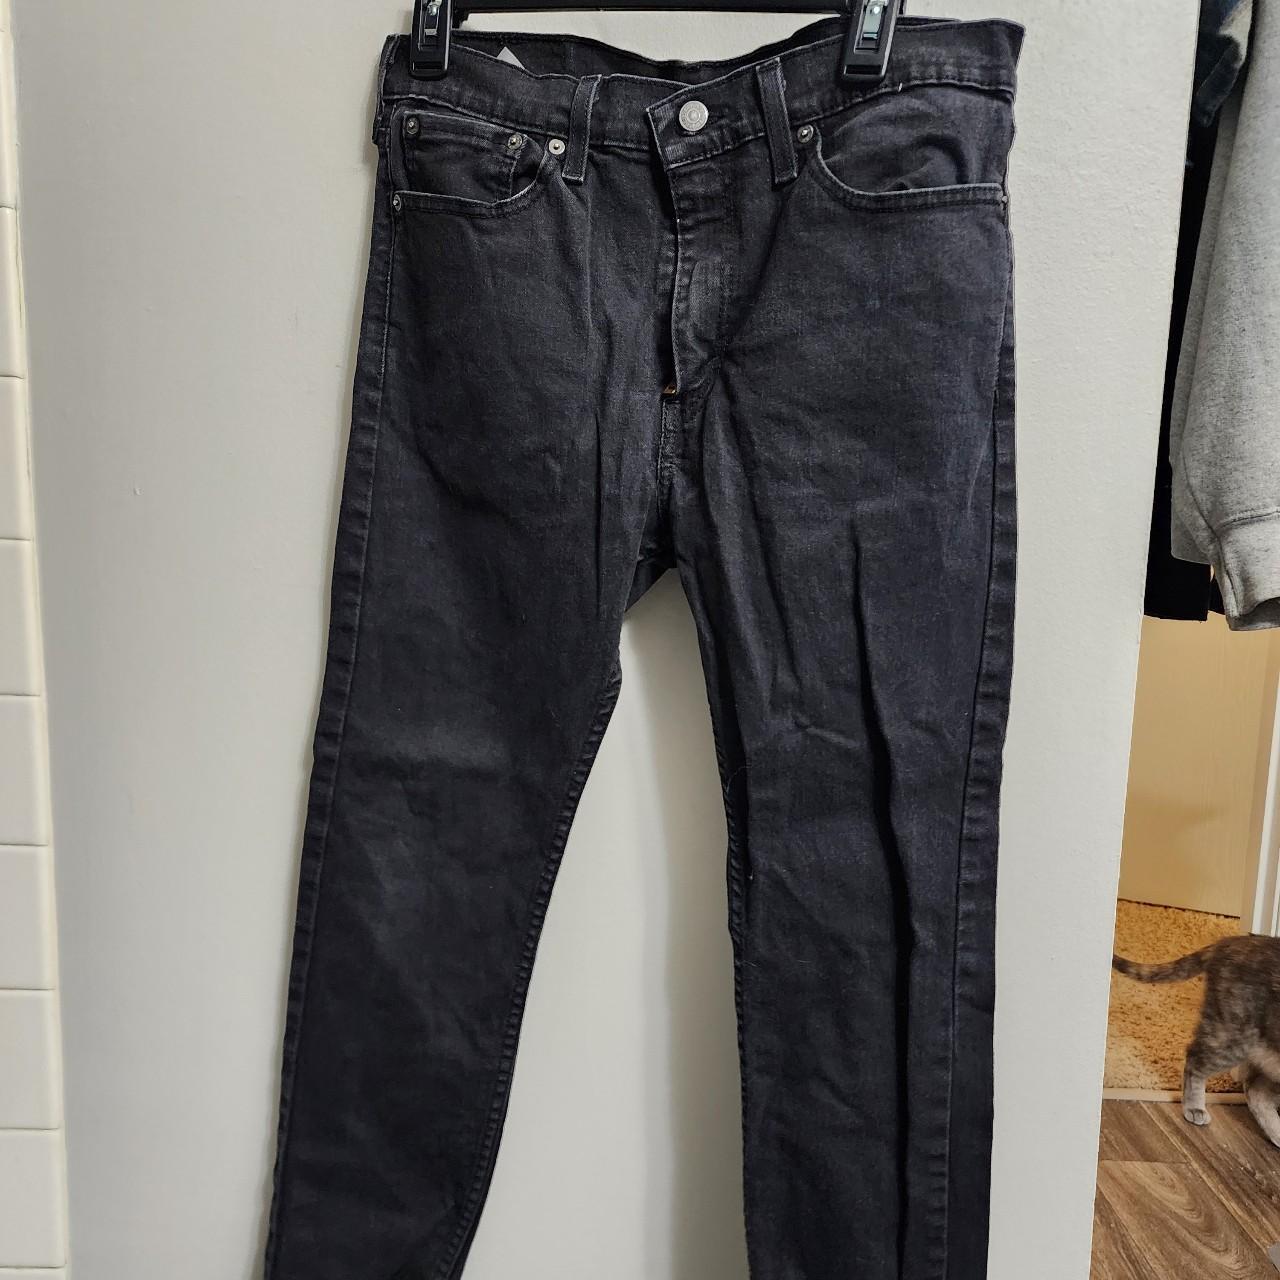 Men's Levi's jeans. Faded black color. Style 510... - Depop